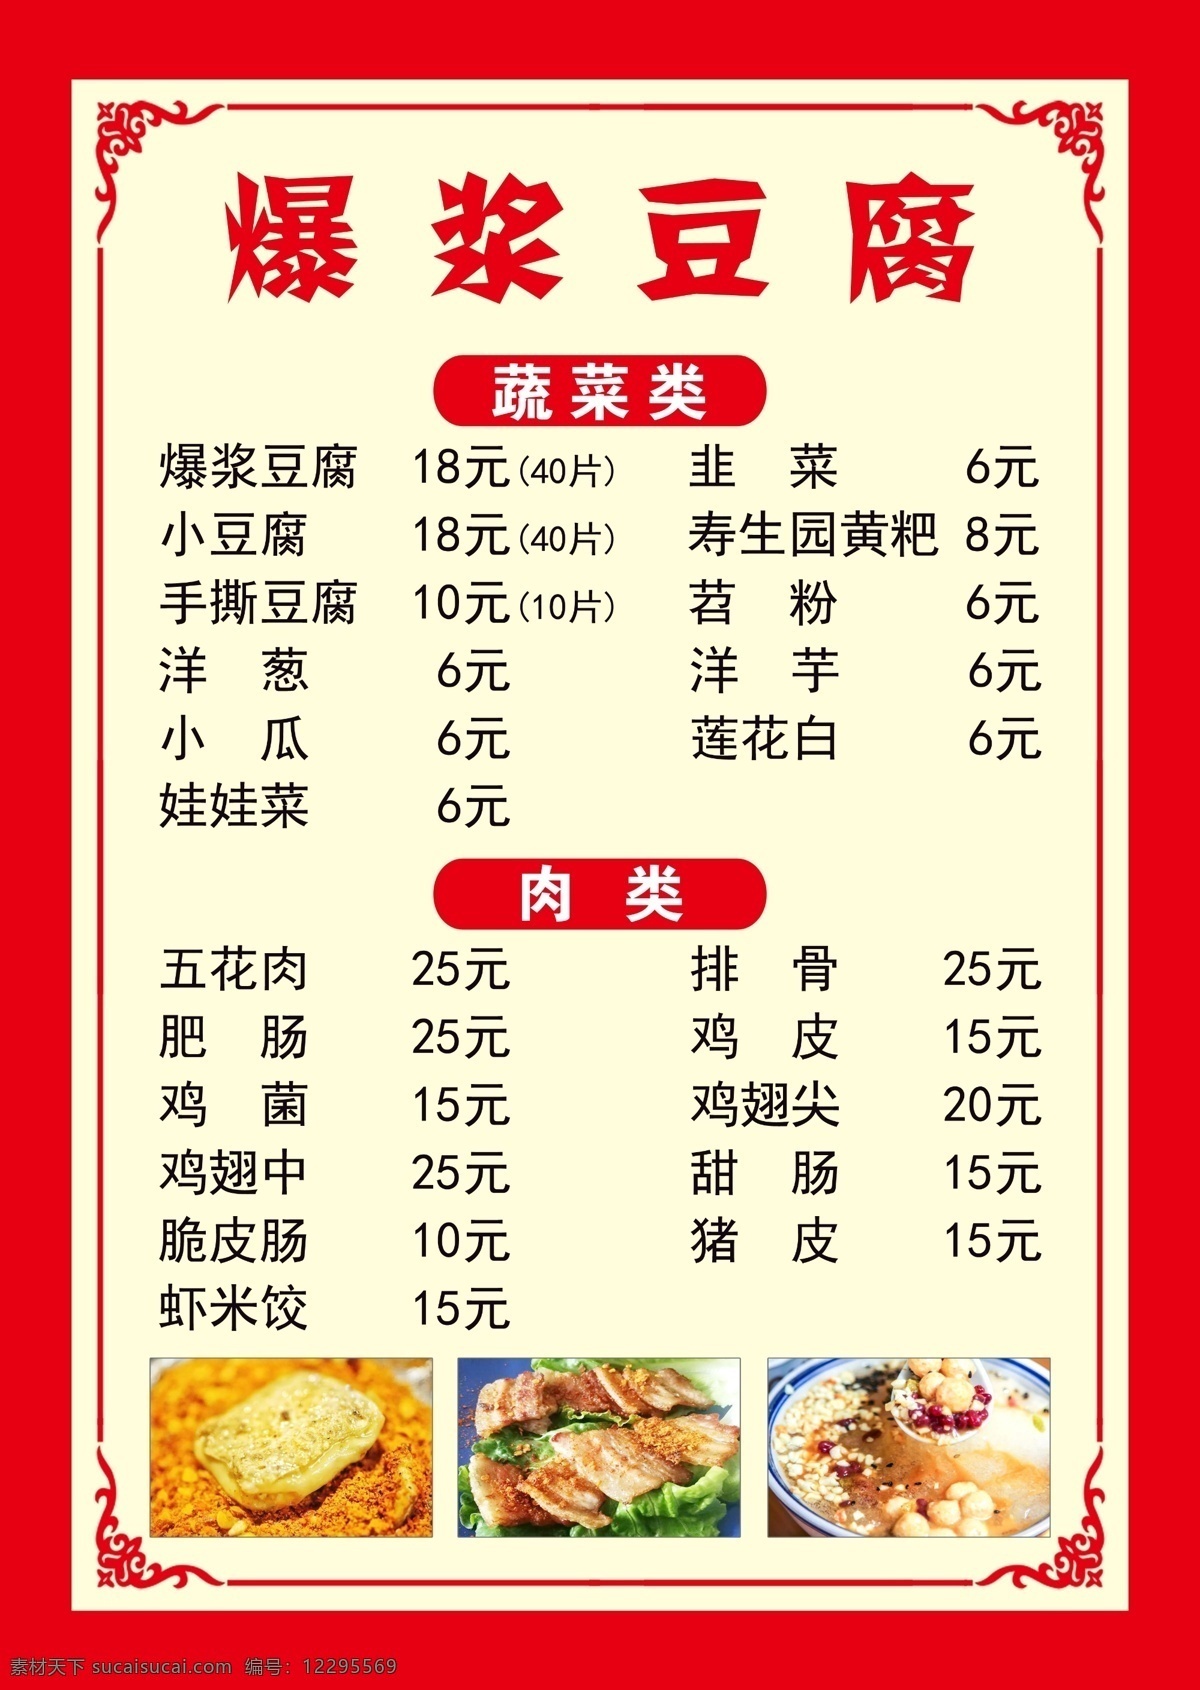 爆 浆 小 豆腐 菜单 爆浆豆腐 蔬菜 肉类 酒水类 炒饭类 各种蔬菜